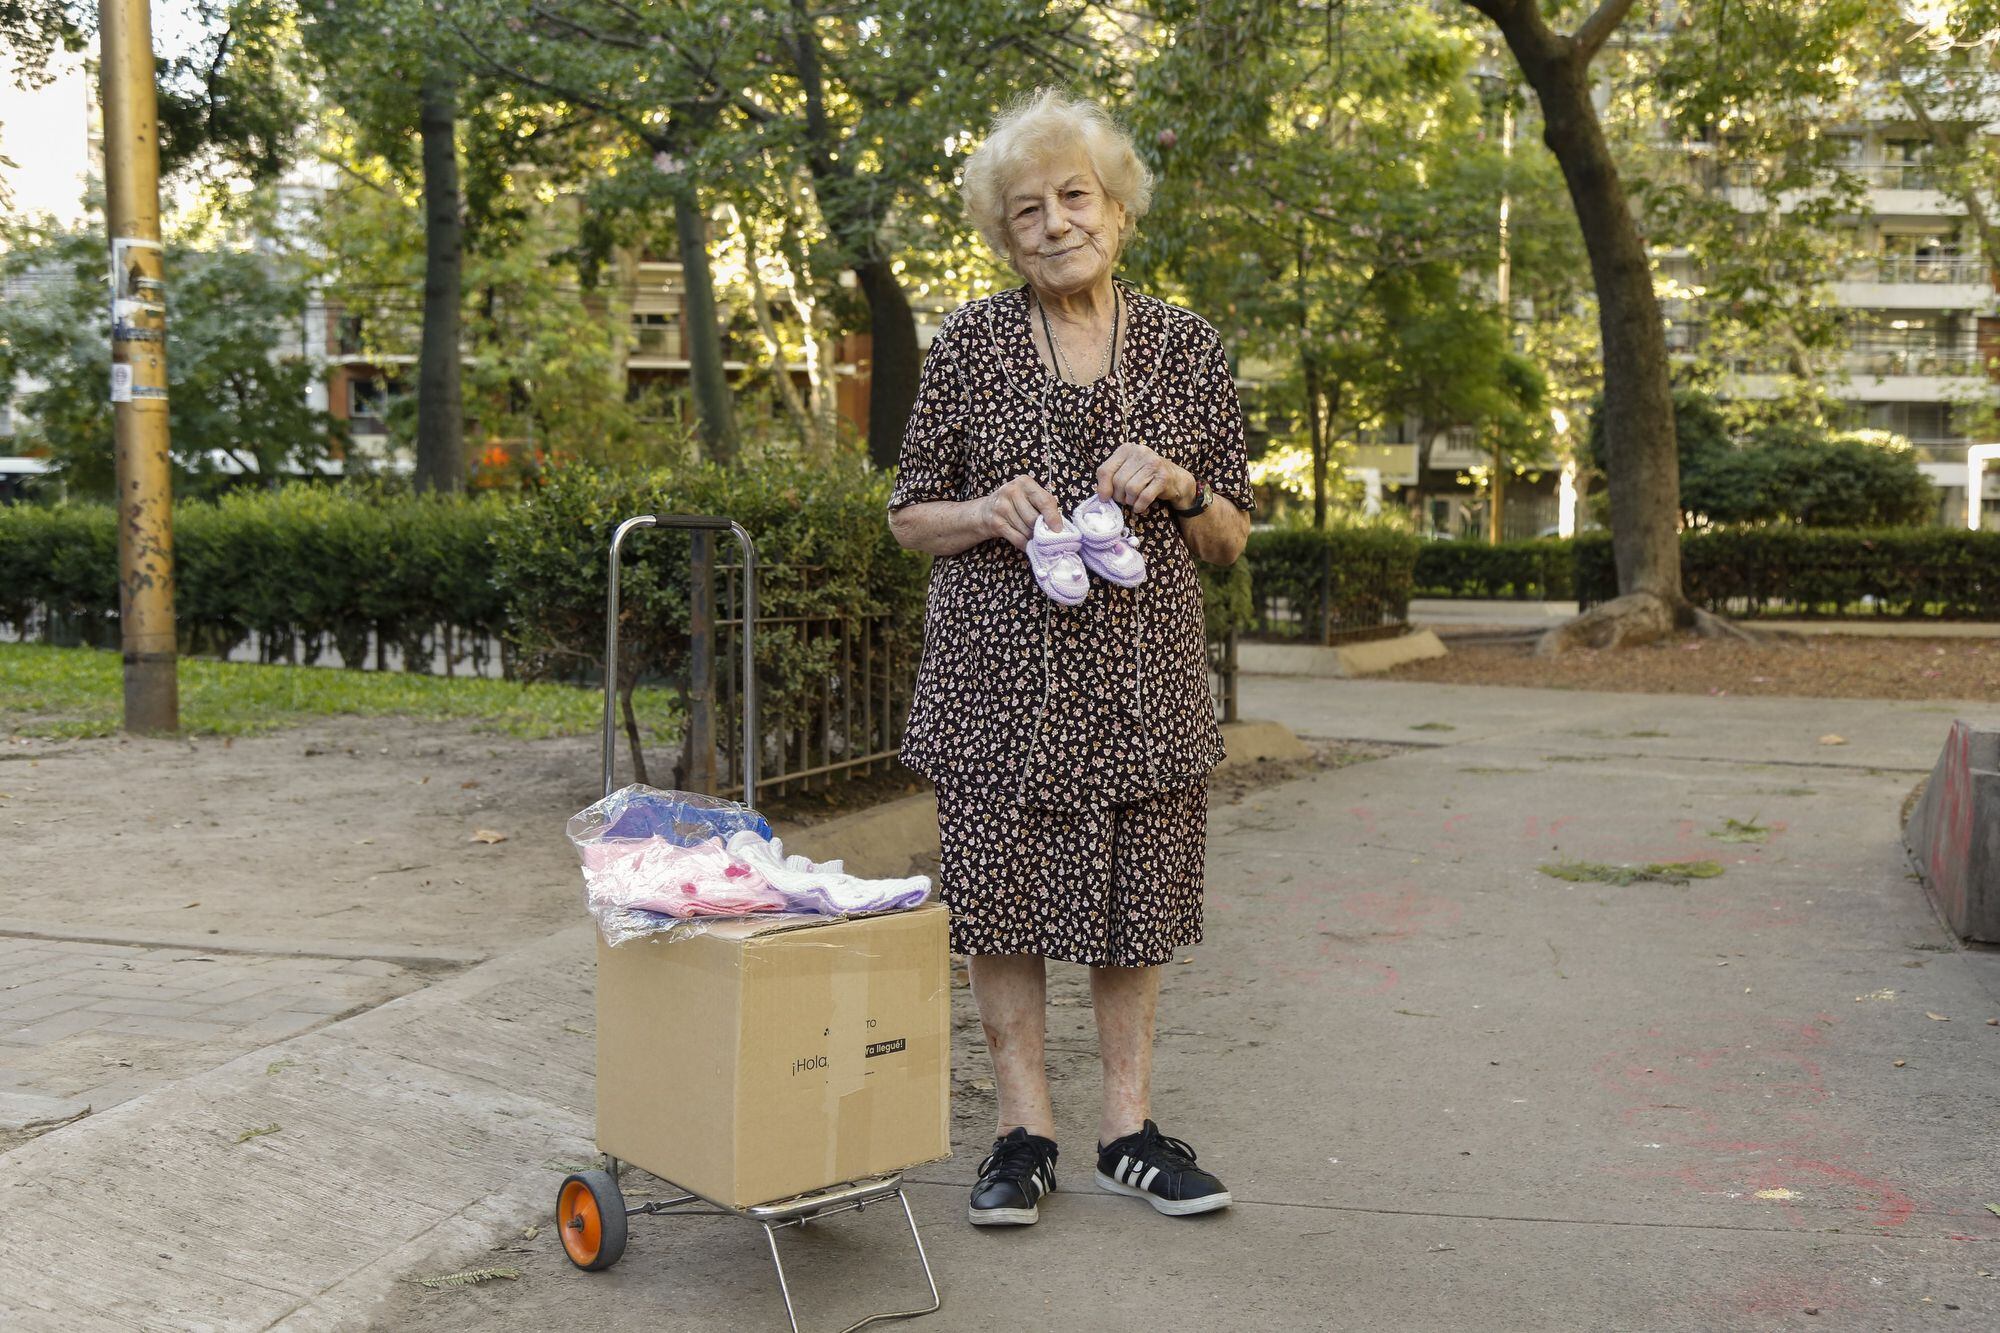 Tiene 90 años y sale a vender batitas de bebés en la plaza: “La jubilación no me alcanza”